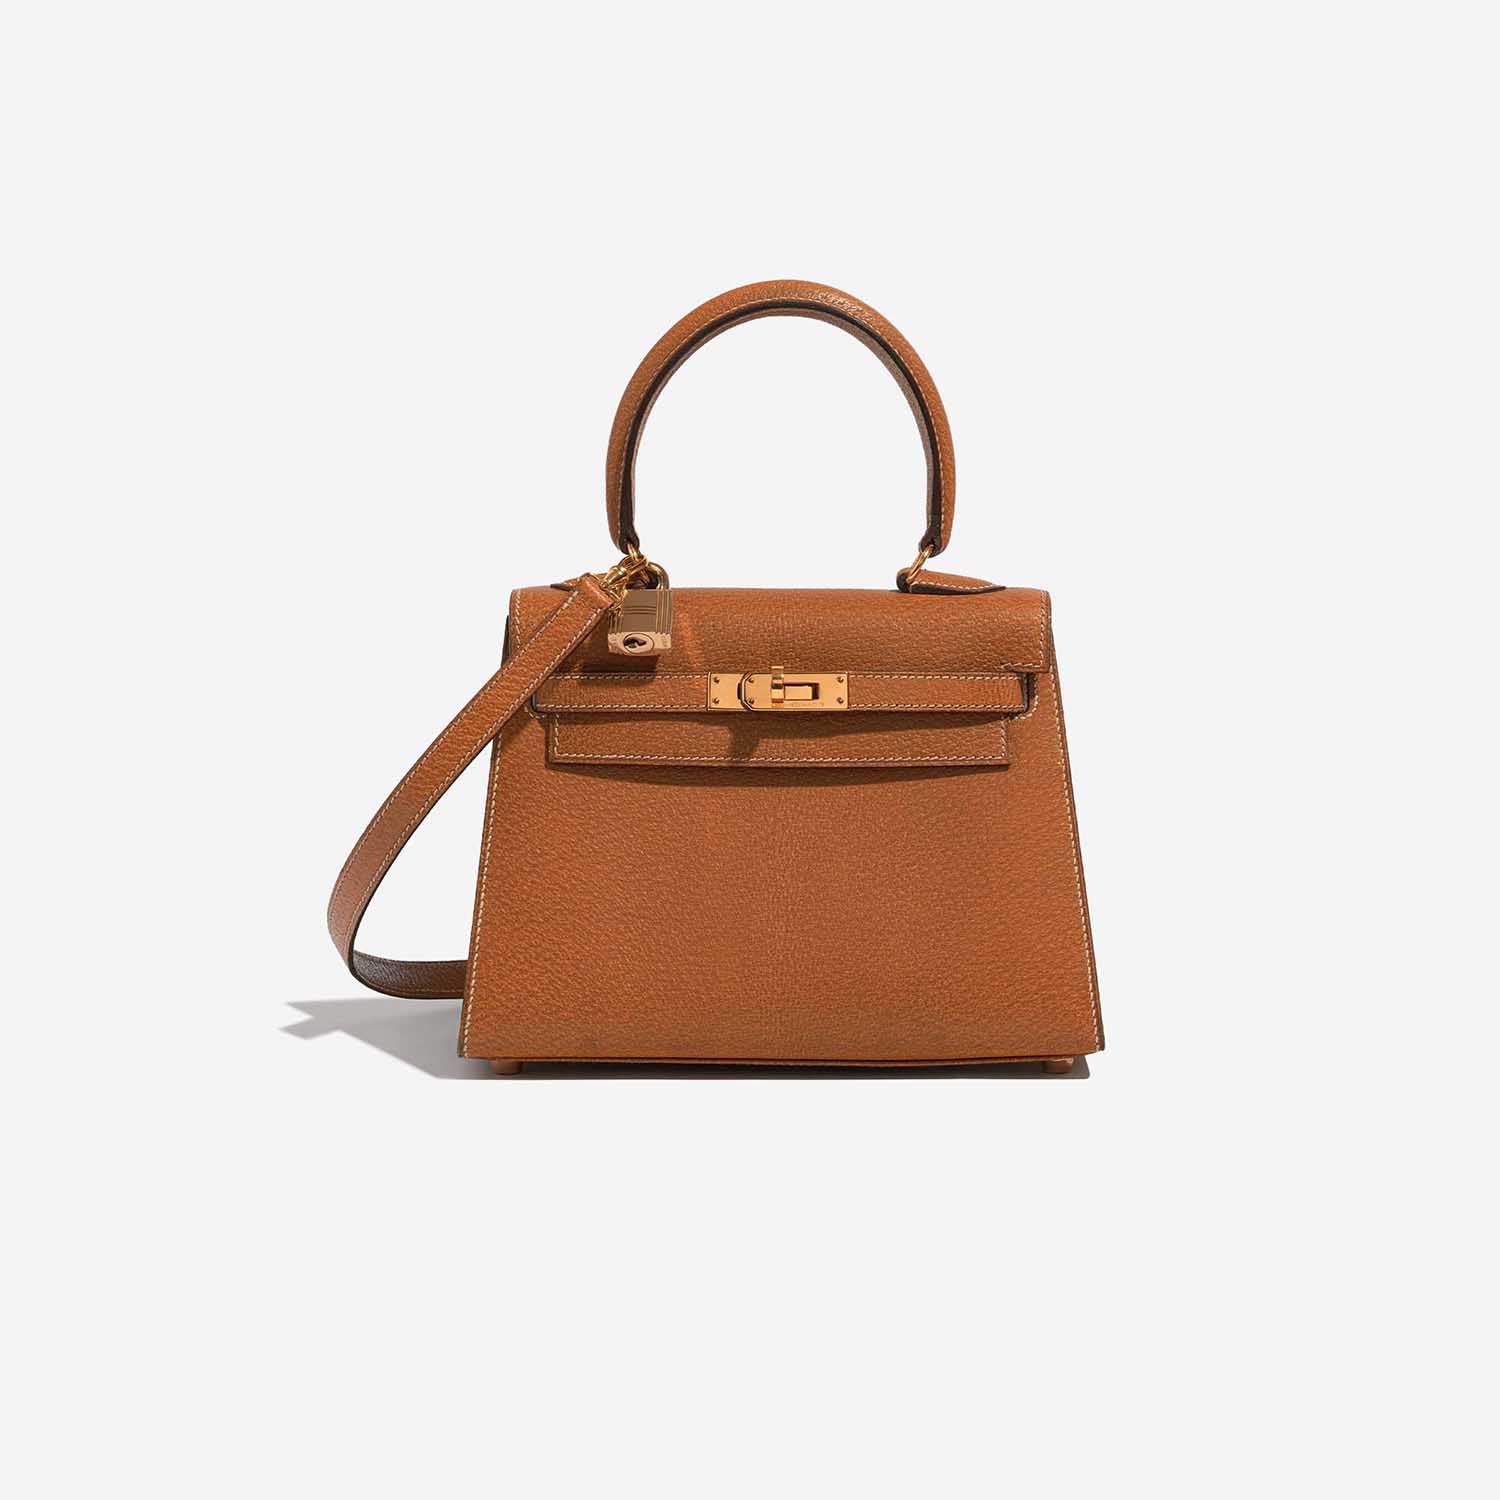 Pre-owned Hermès Tasche Kelly Mini Porc Gold Brown Front | Verkaufen Sie Ihre Designer-Tasche auf Saclab.com